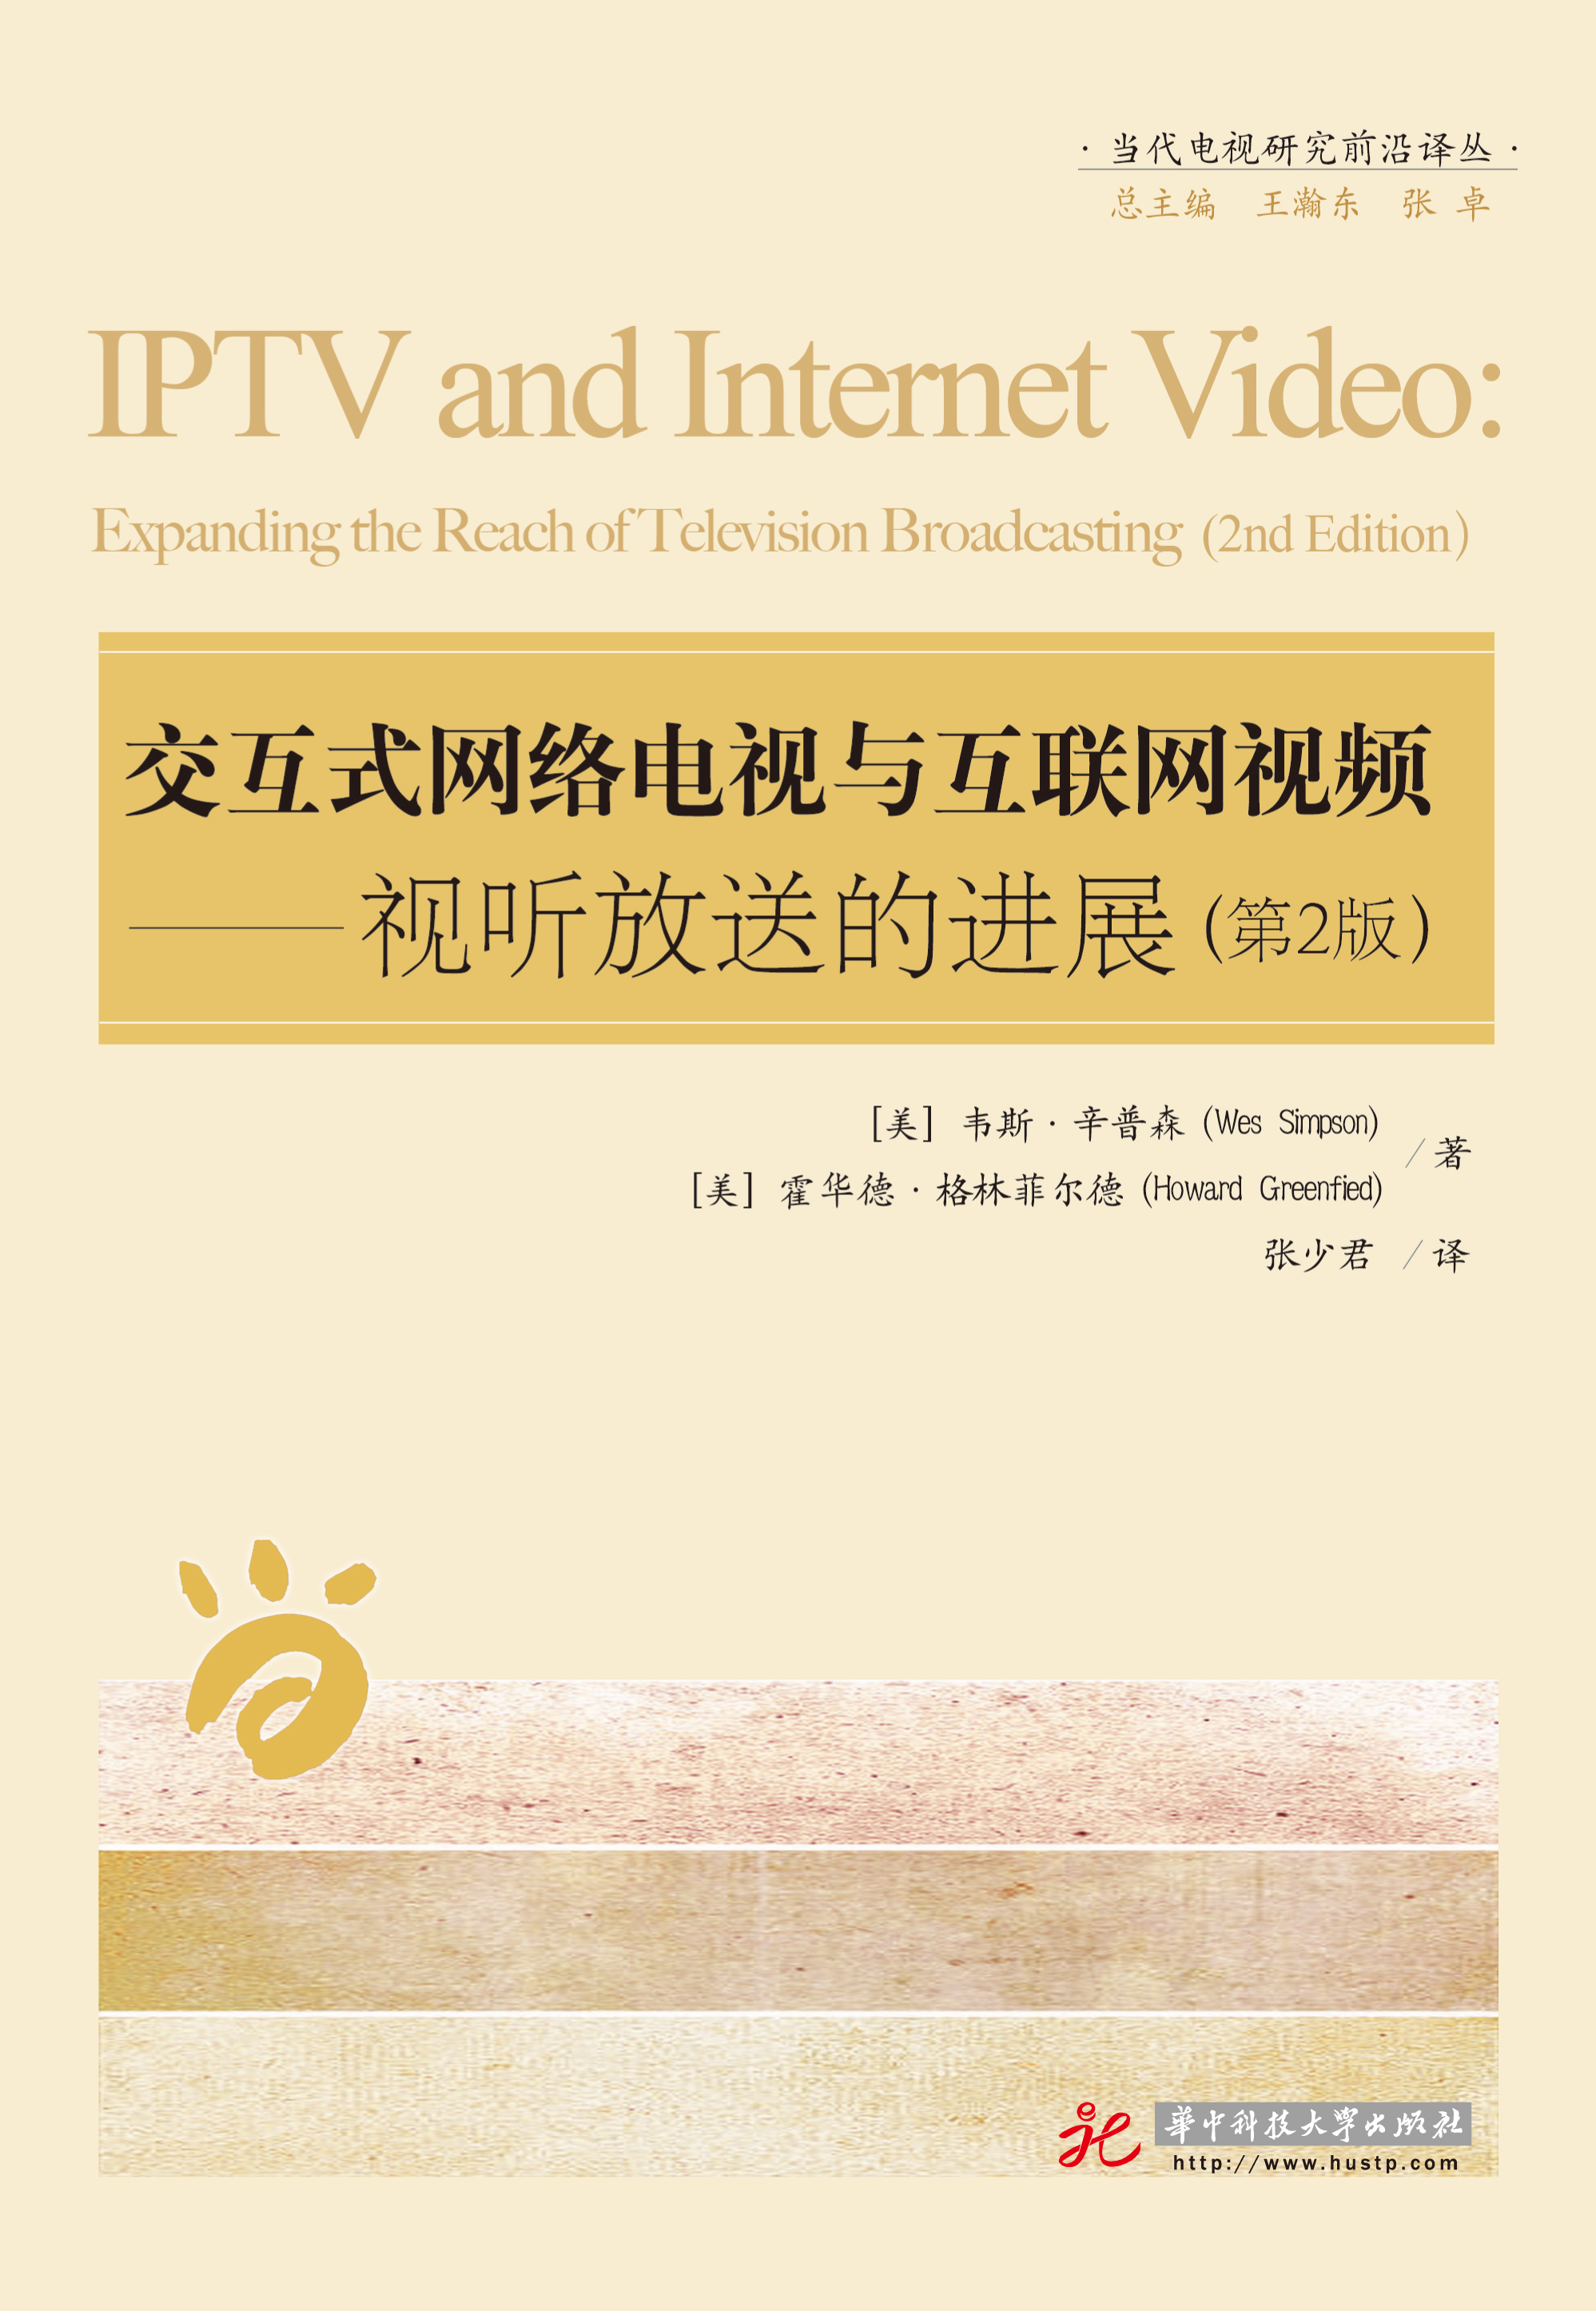 交互式网络电视与互联网视频——视听放送的进展（第二版）